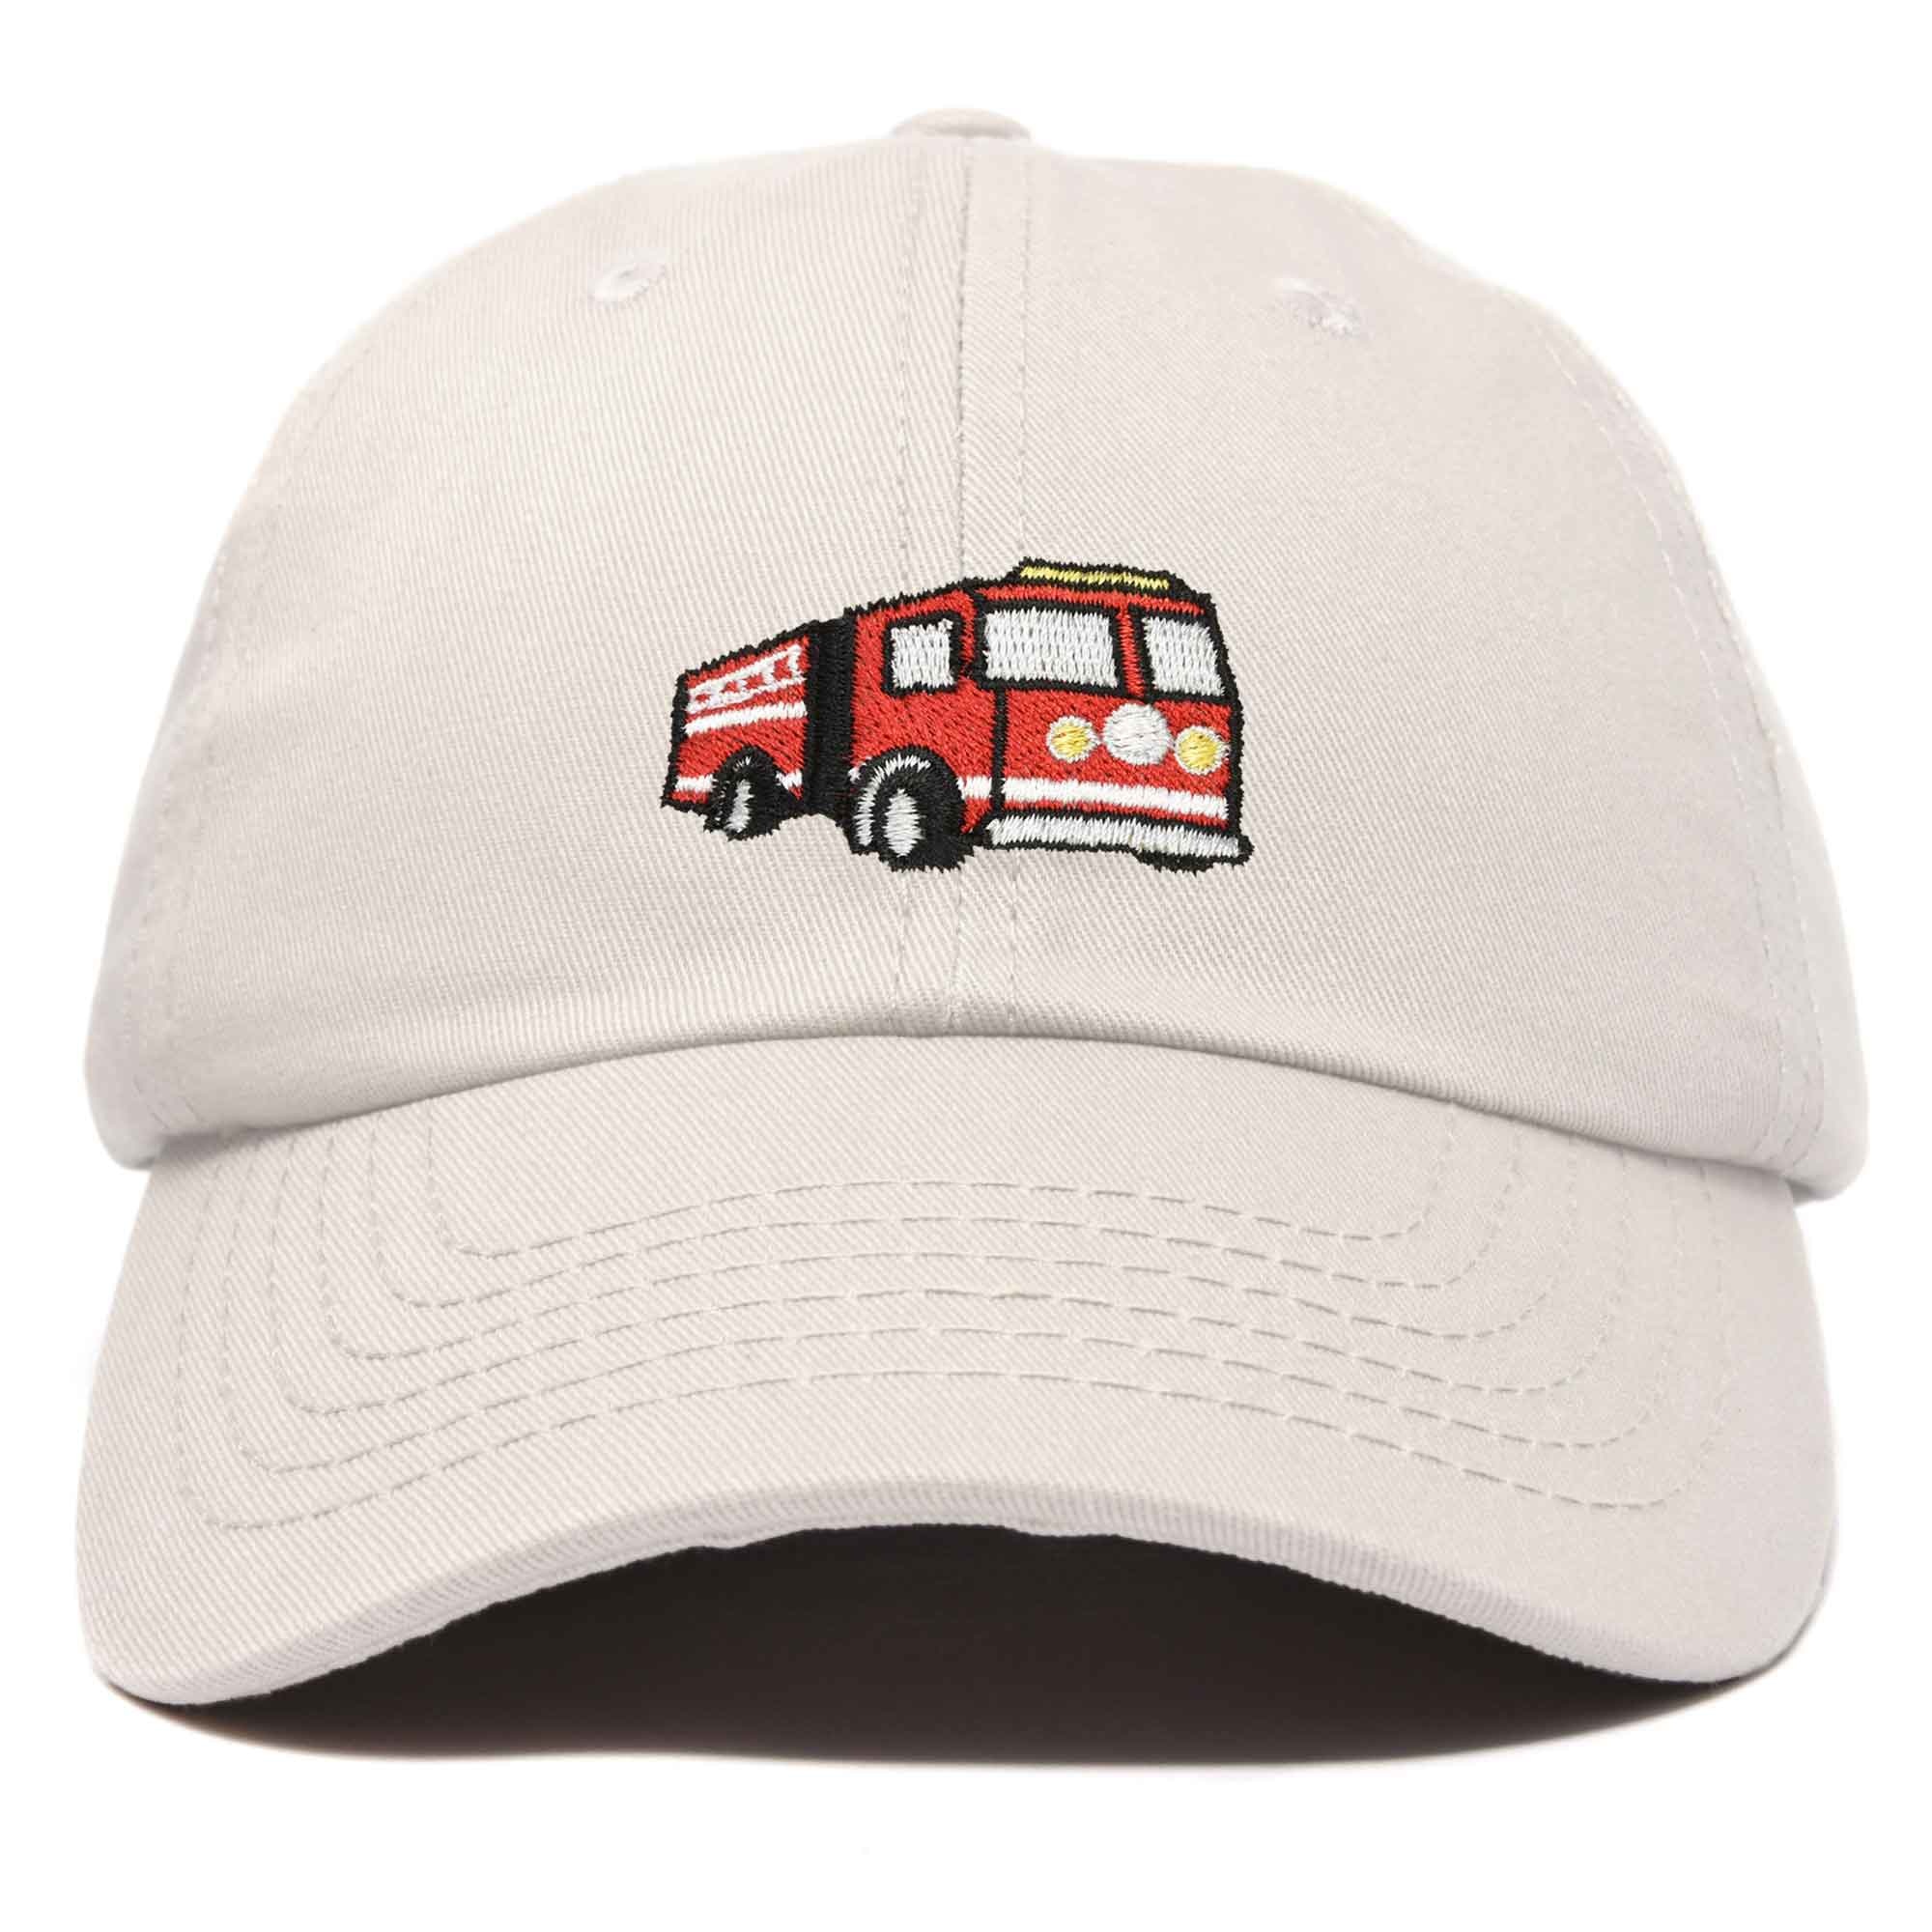 Fire Truck Baseball Cap